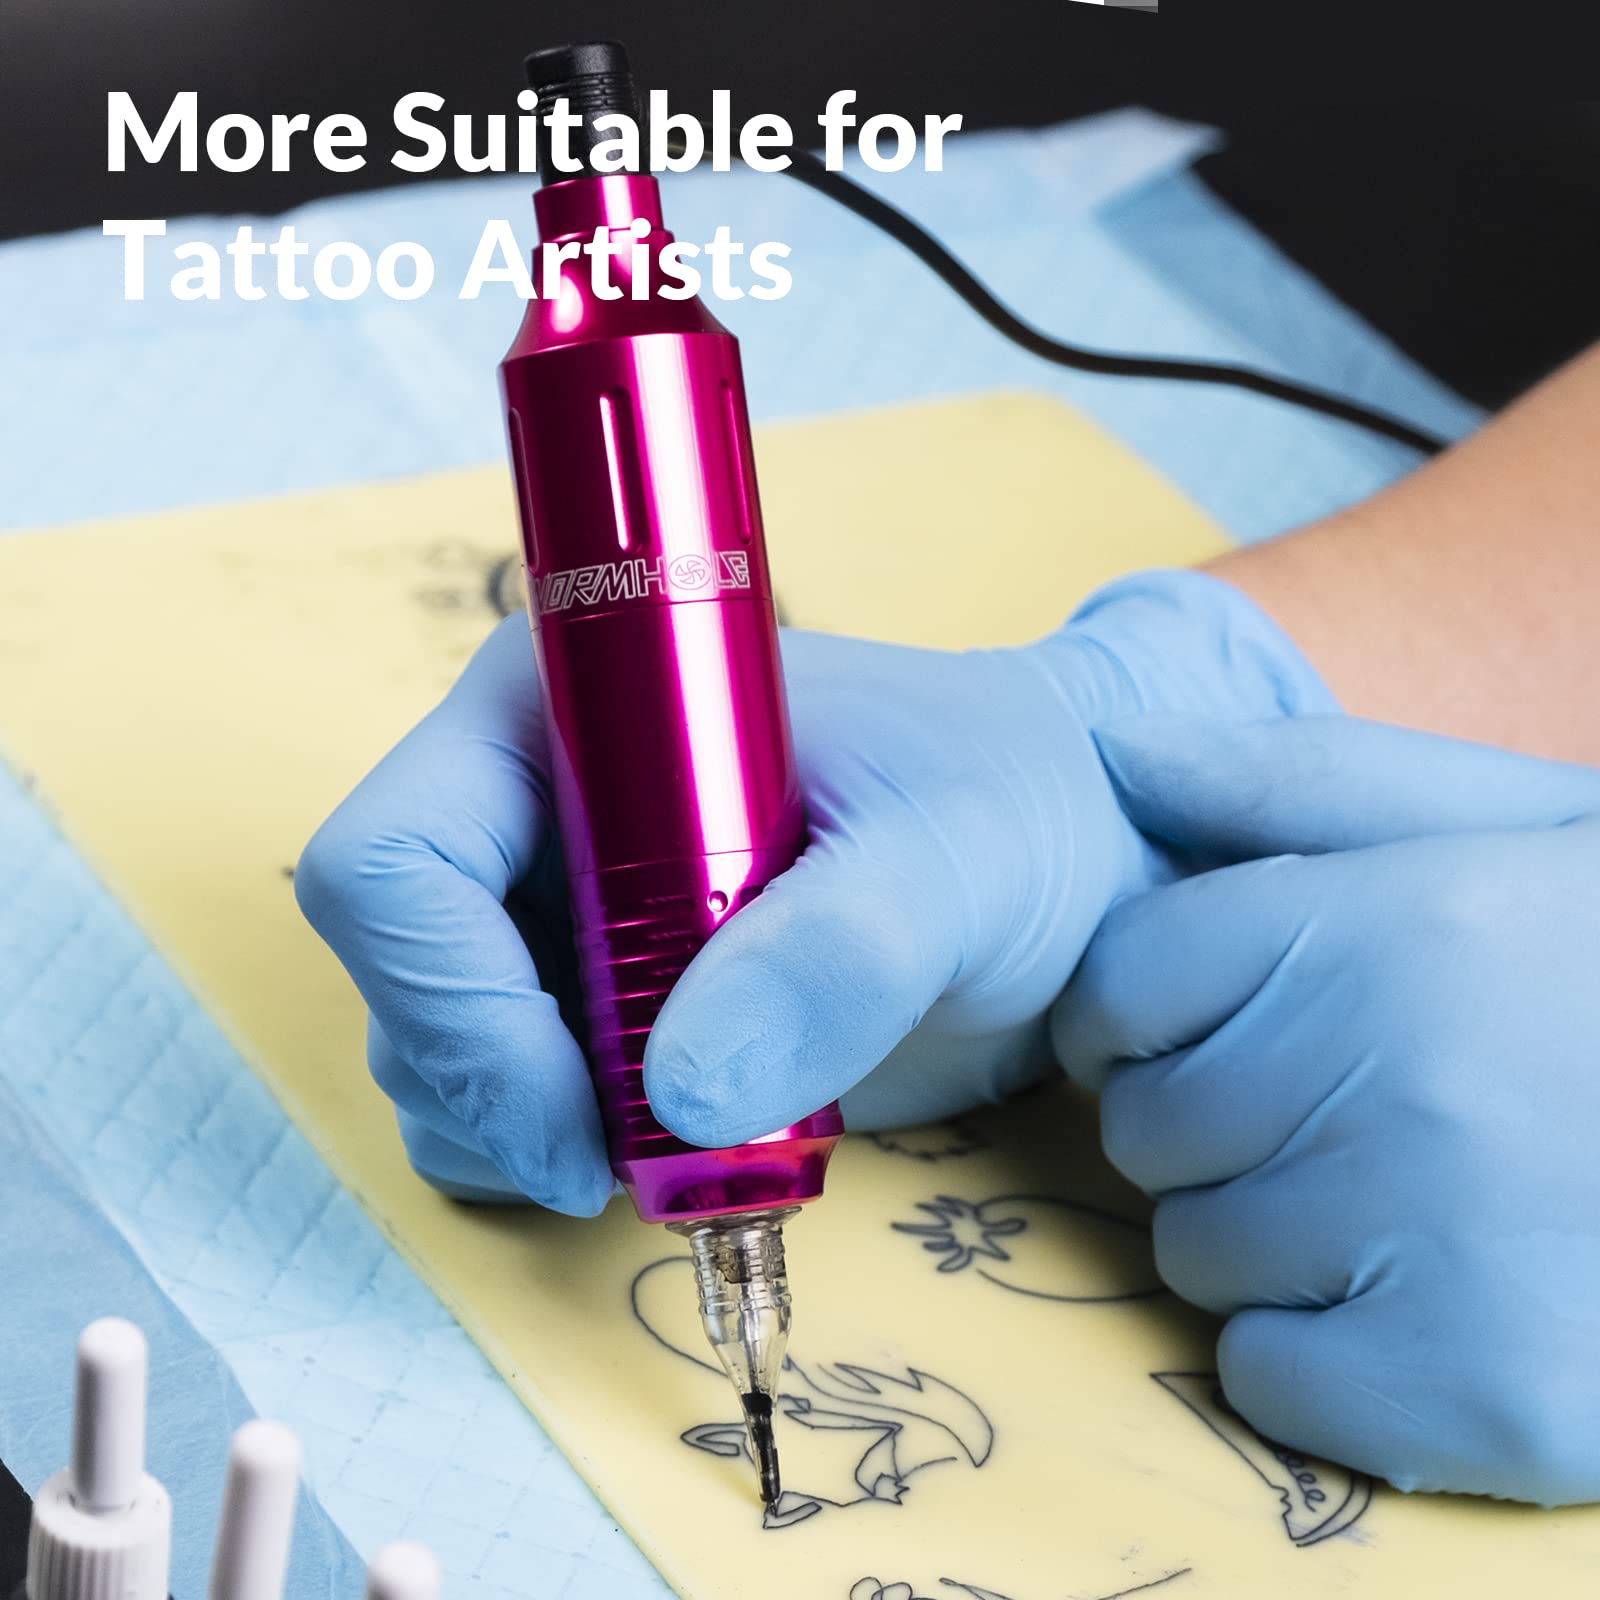 Wormhole Tattoo Kit Rotary Tattoo Machine Kit Tattoo Pen Kit with Power Supply 20 Tattoo Cartridge Needles 6 Tattoo Ink 40 Tattoo Ink Caps Complete Tattoo Gun Kit for Beginners Tattoo Artist